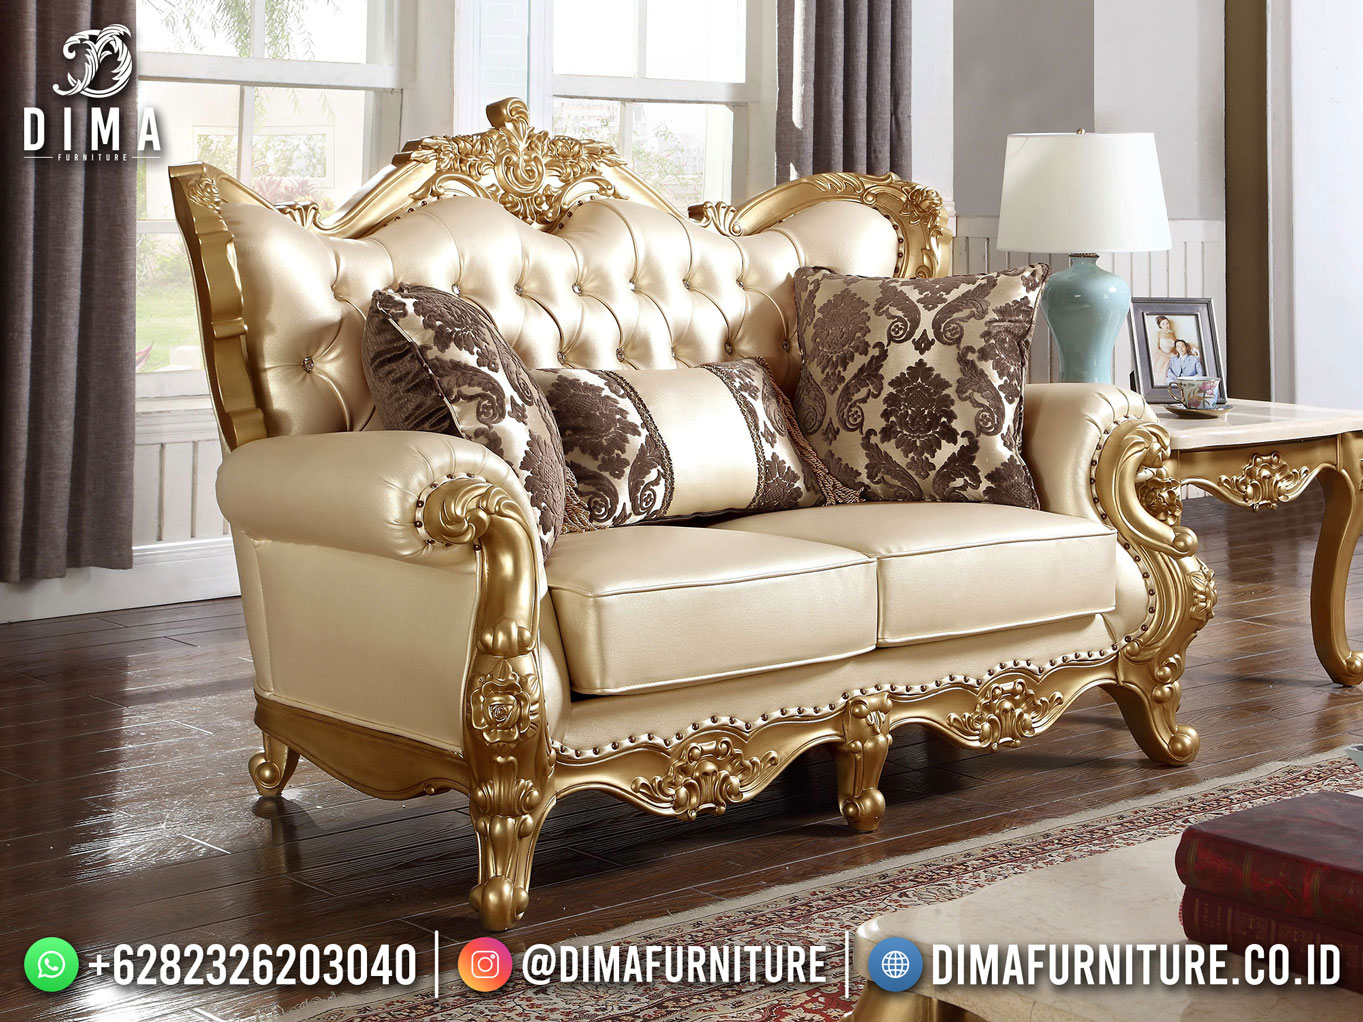 Best Seller Desain Sofa Tamu Mewah Jepara Luxury Carving Golden Color BT-1101